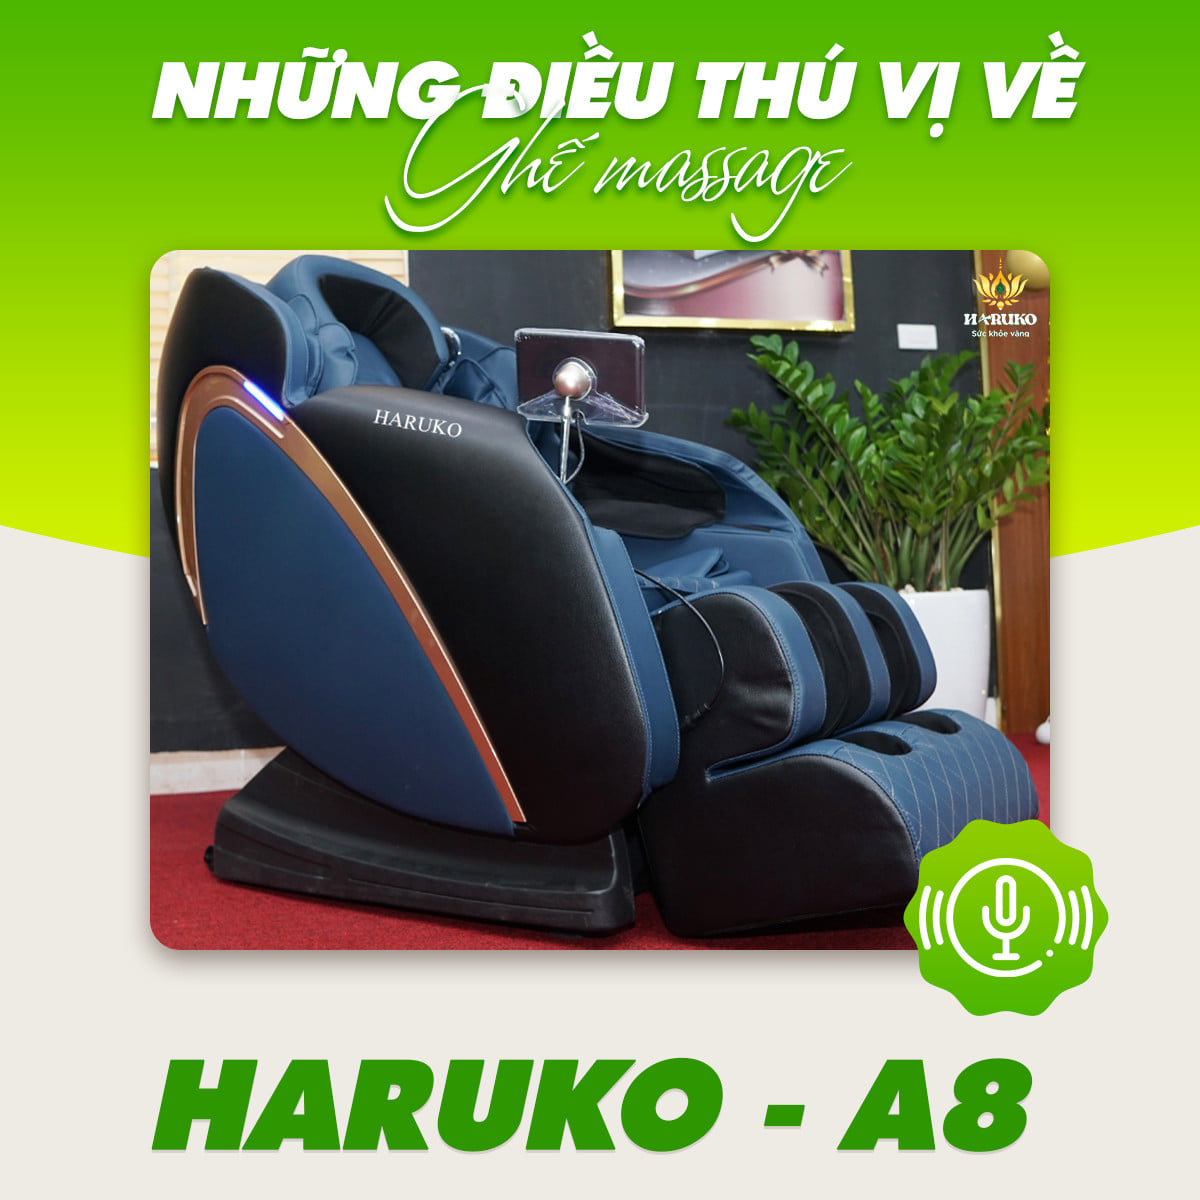 Ghế massage A8 với gam màu xanh ngọc toát lên vẻ sang trọng khi bạn ngắm nhìn